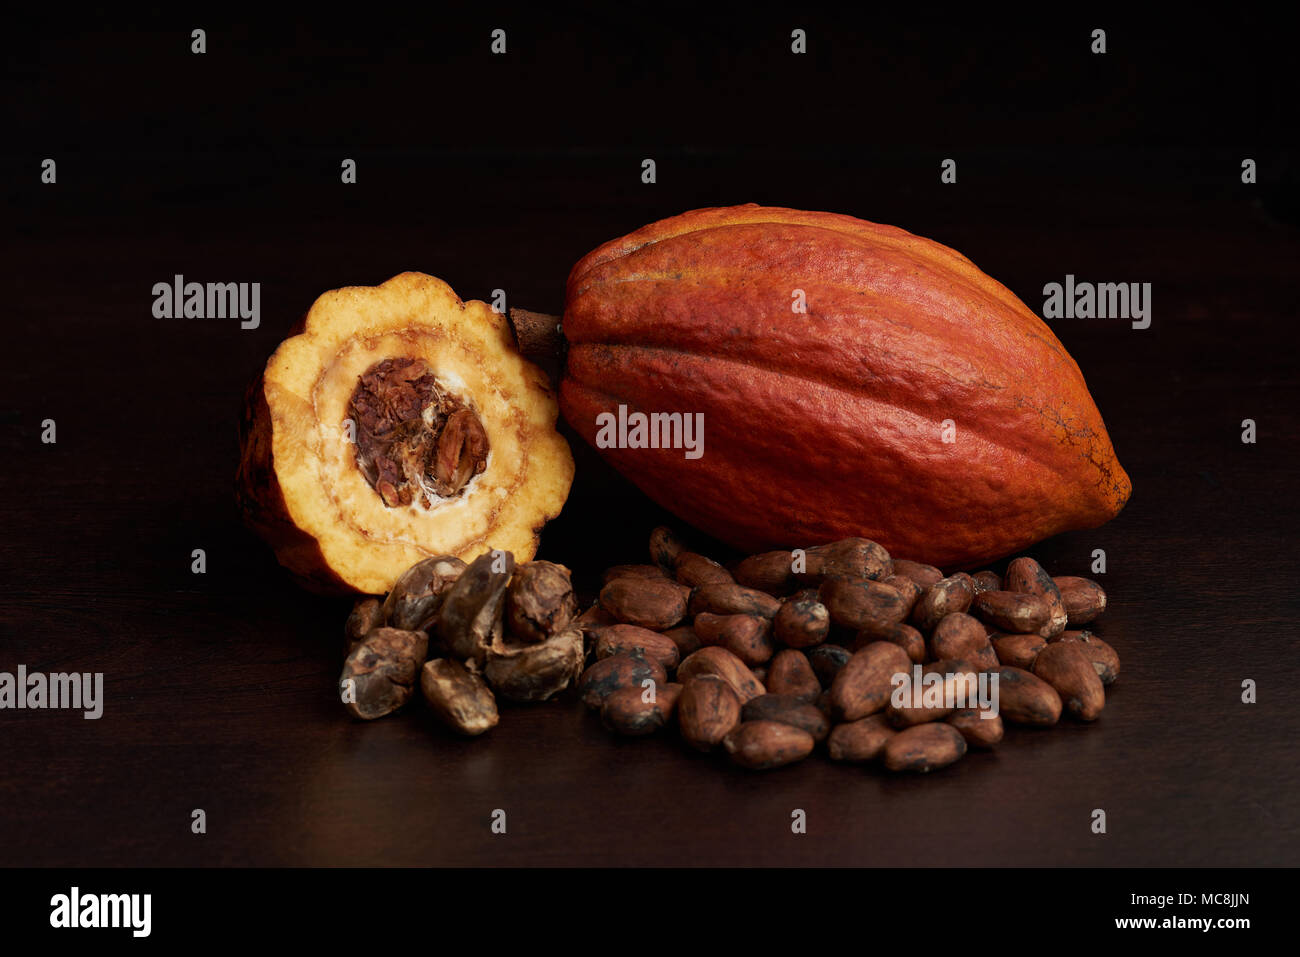 Ingrédient principal pour la production de chocolat. Ouvrir les fruits de cacao Banque D'Images